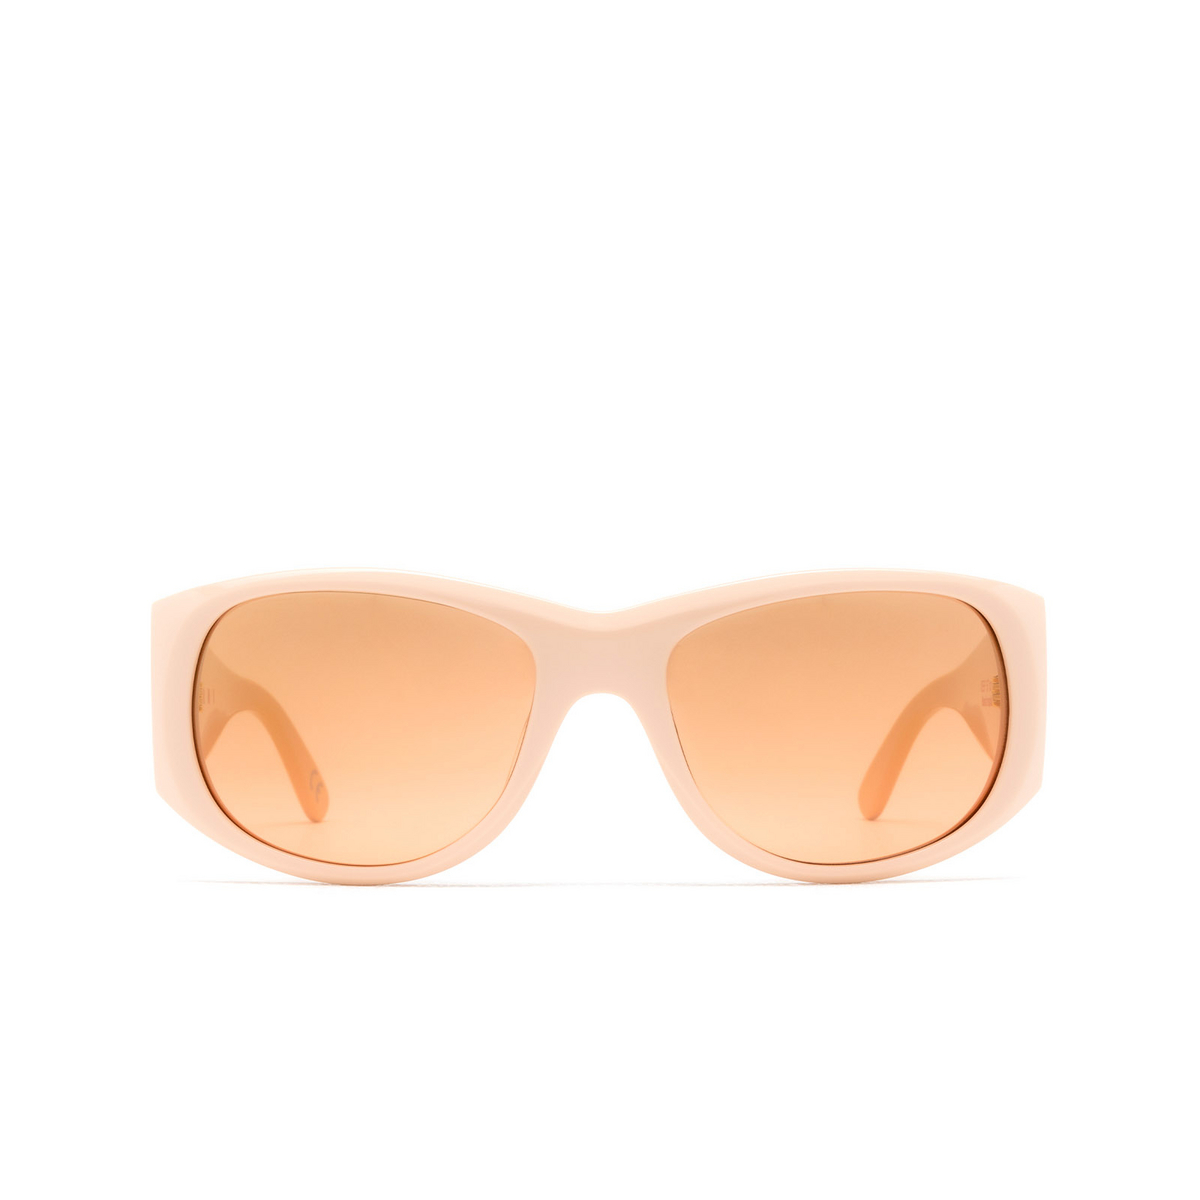 Marni ORINOCO RIVER Sunglasses 0EF Nude - front view